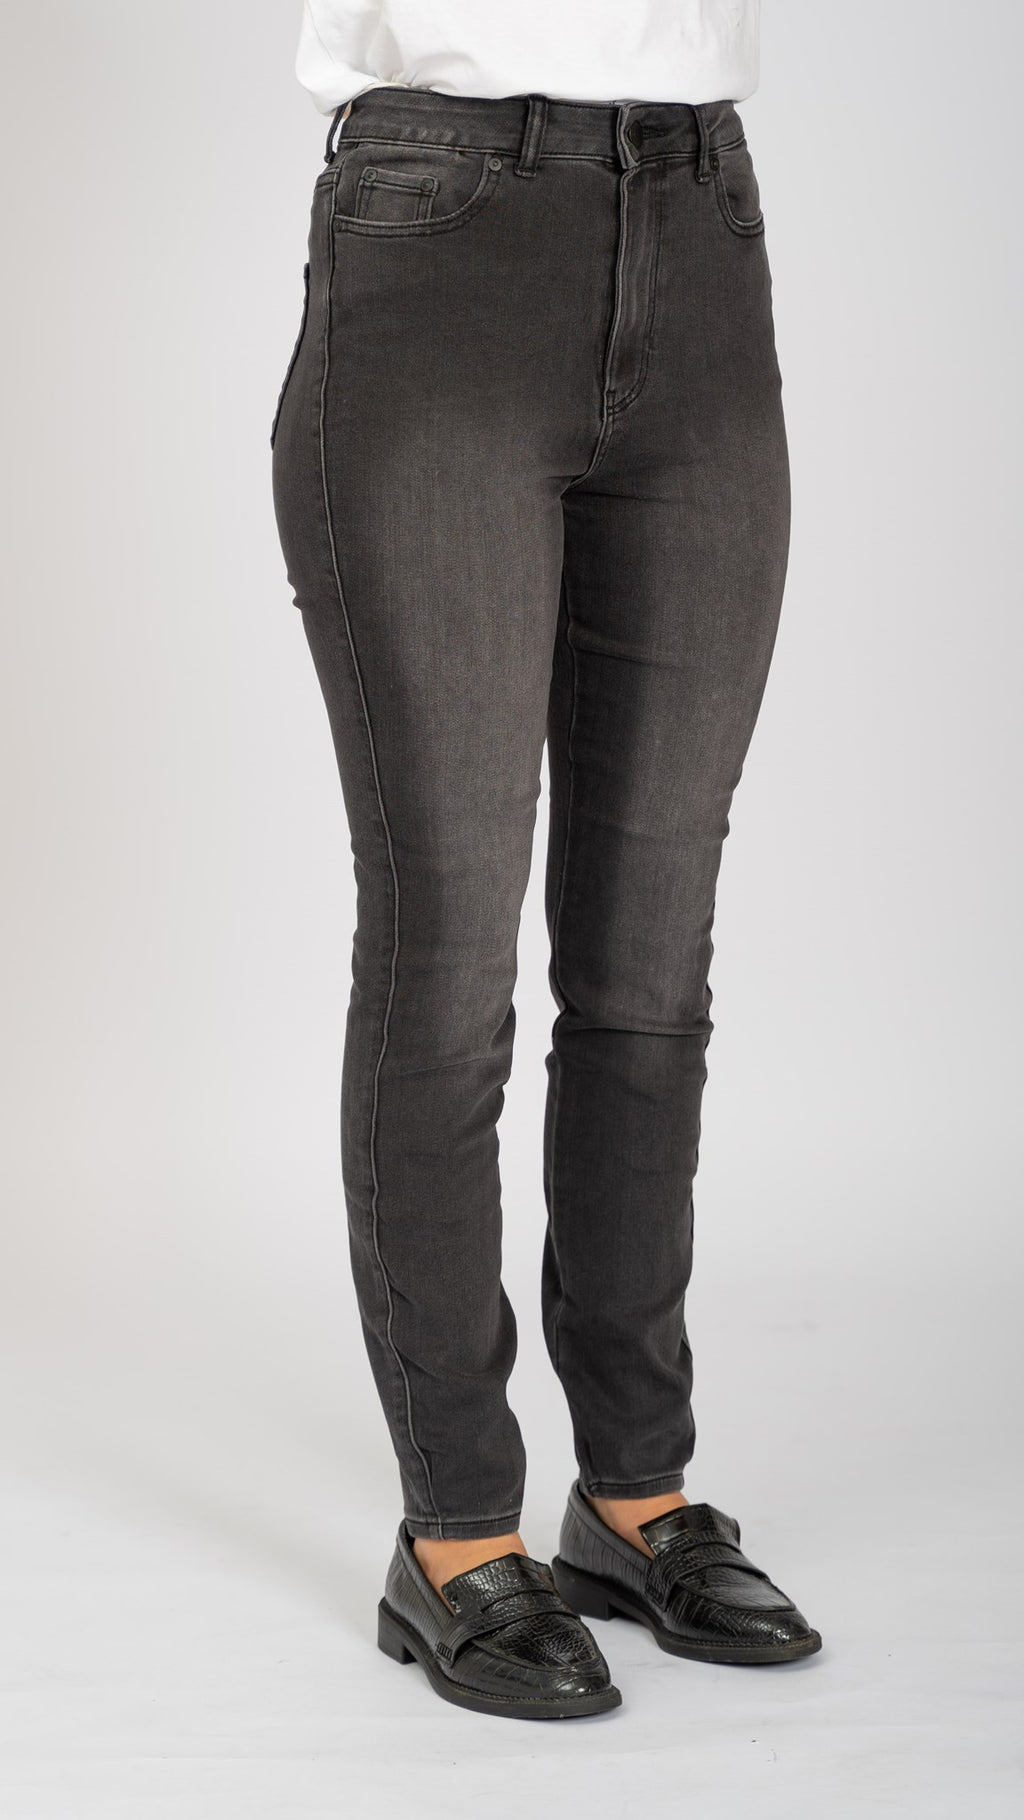 Performance Skinny Jeans - Washed Black Denim